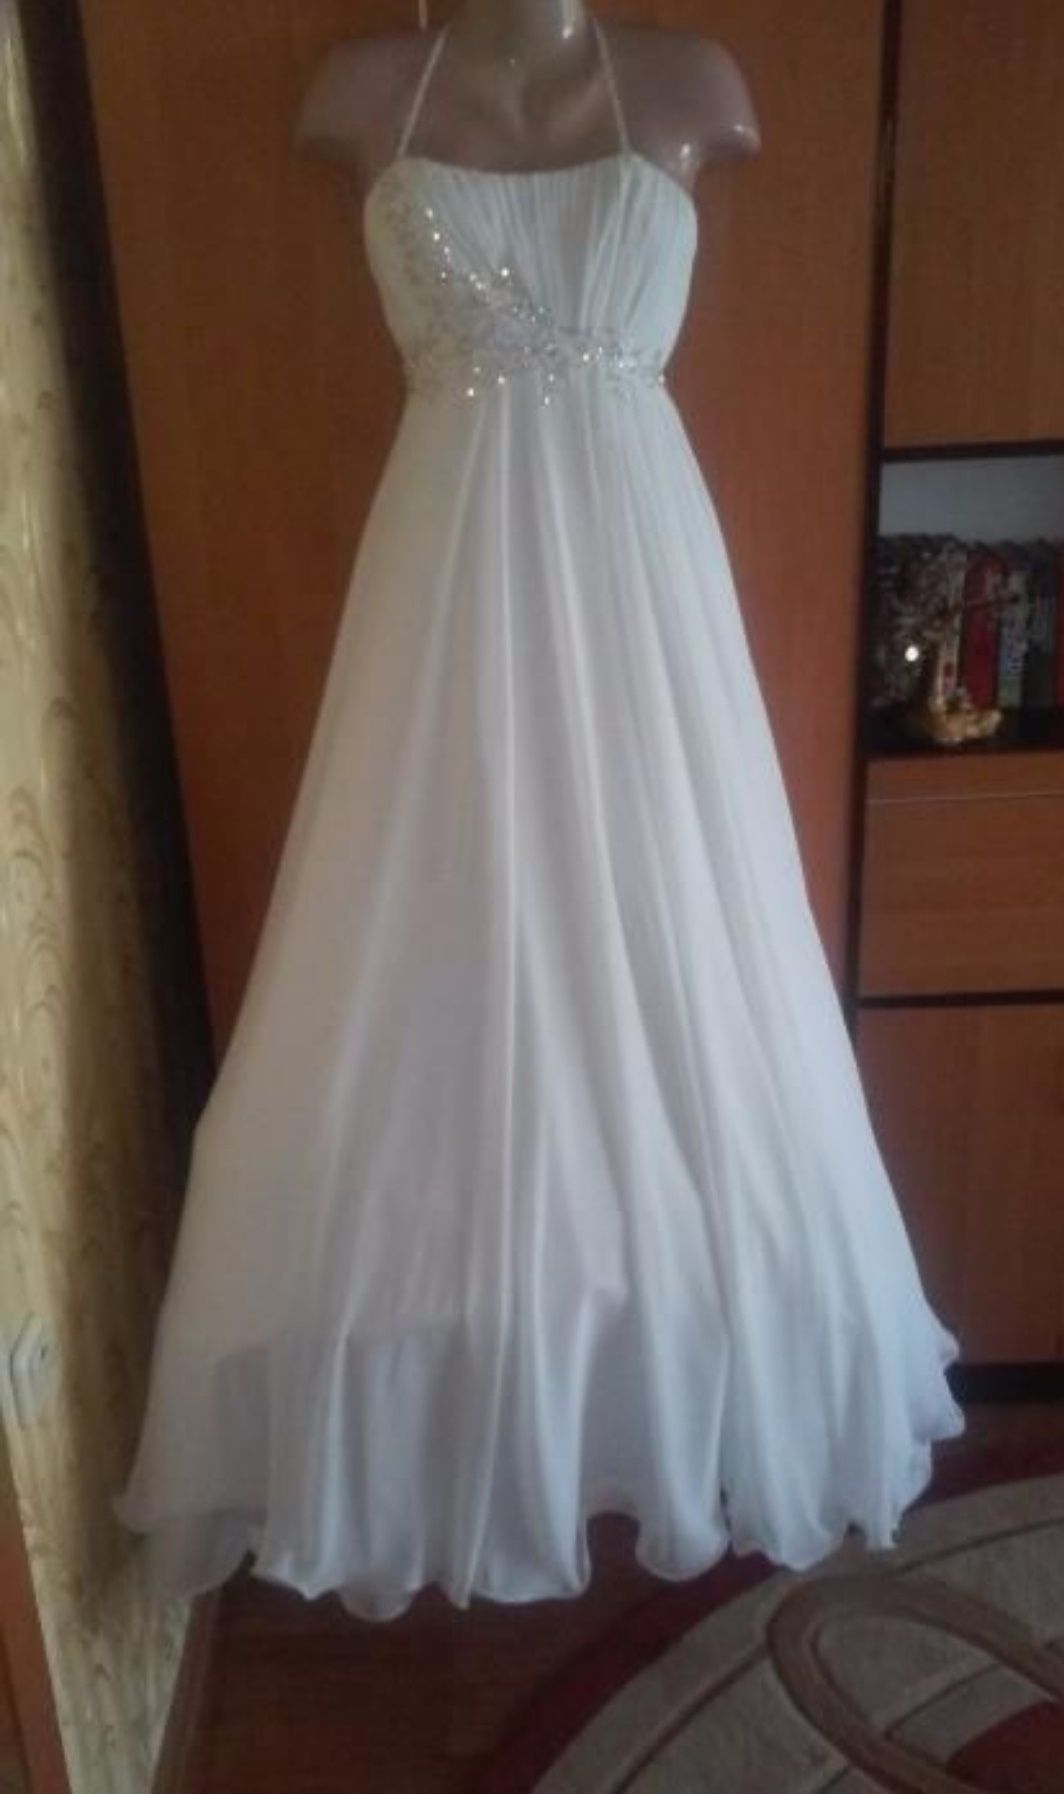 Весільна біла сукня